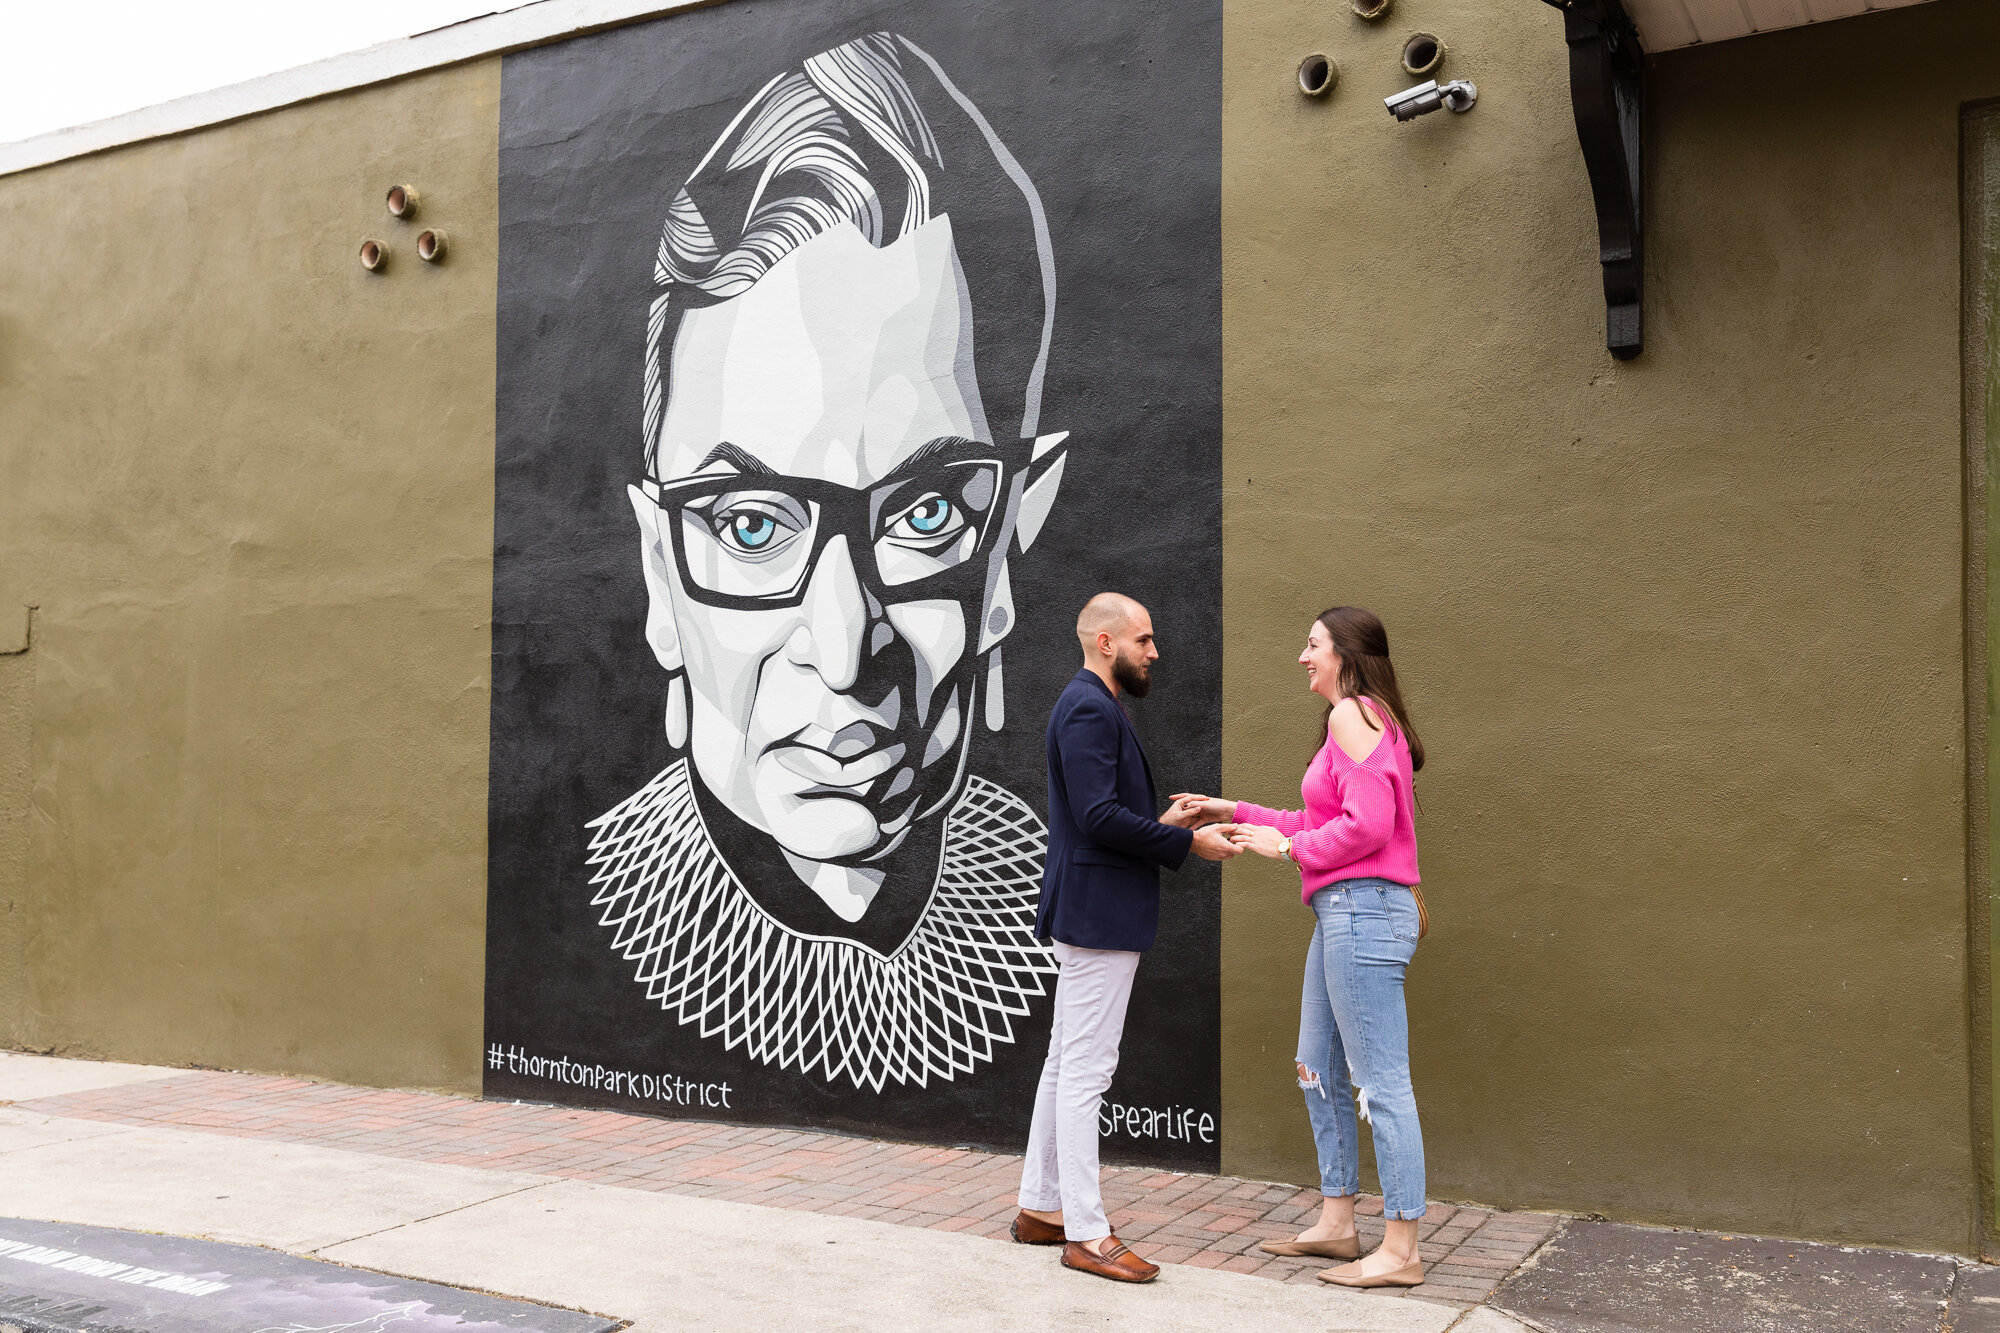  Marriage Proposal at Orlando's Ruth Bader Ginsburg Mural  